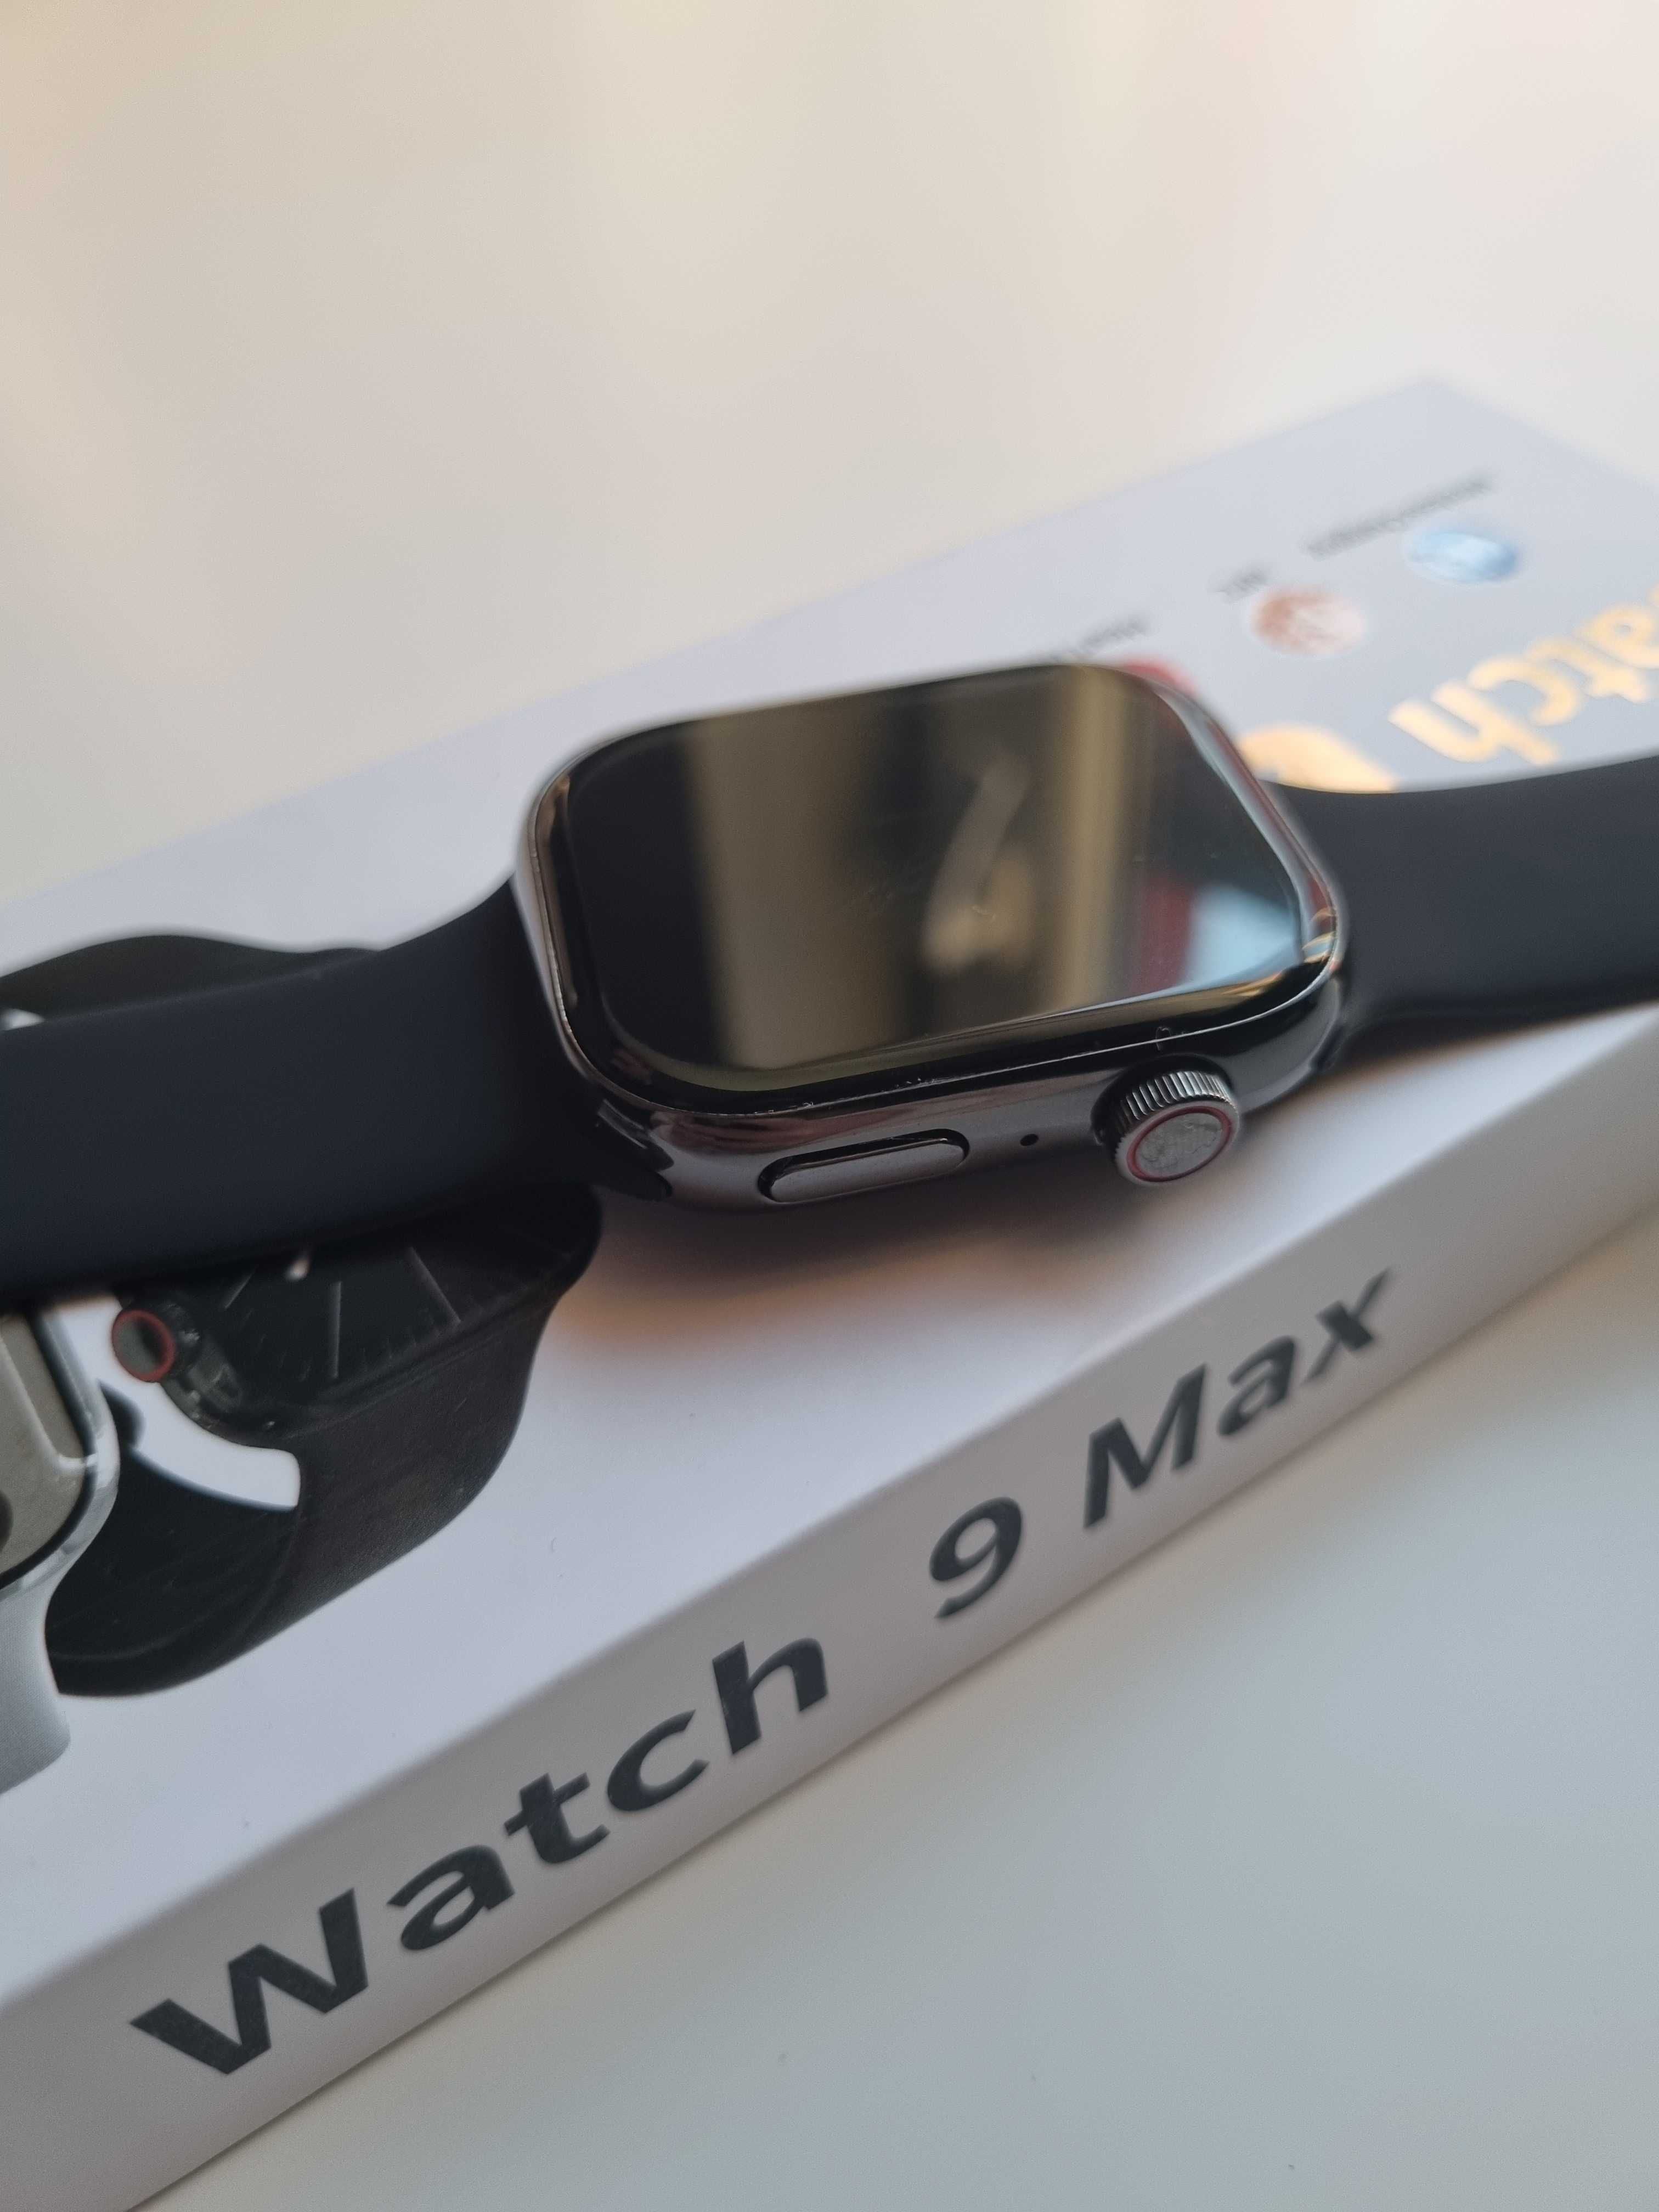 Smartwatch S9 czarny